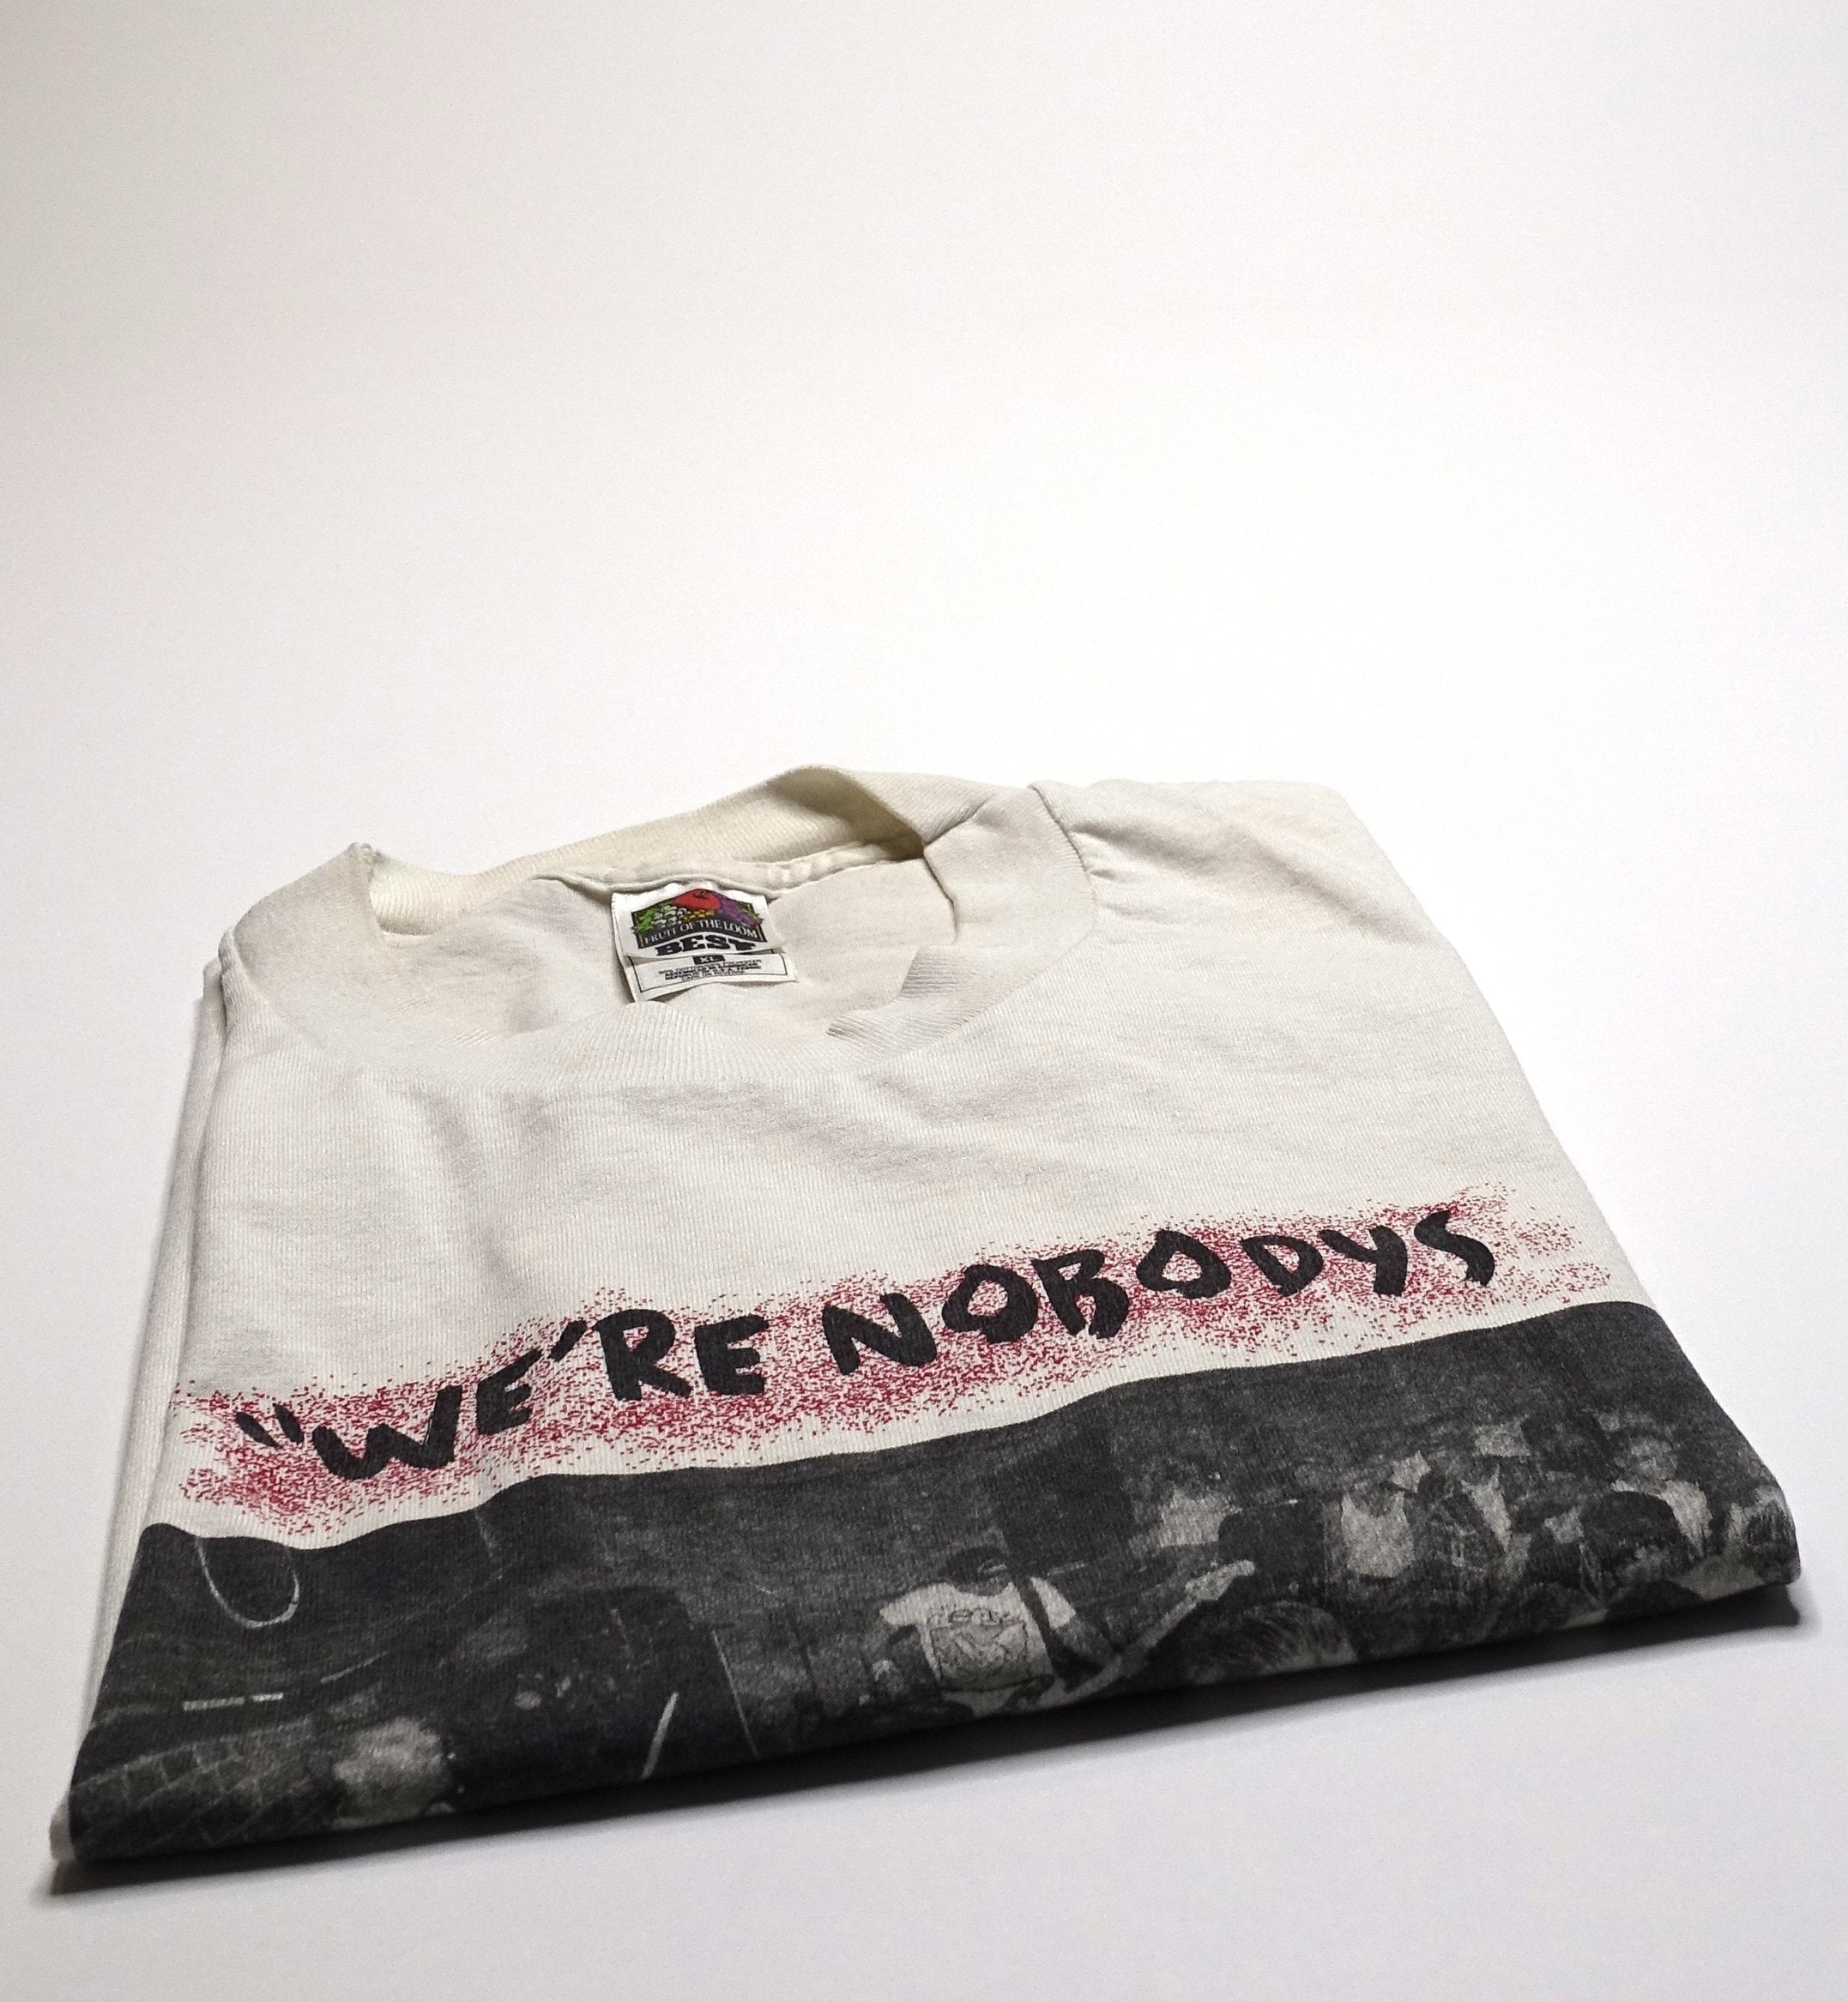 Nobodys - We're Nobodys 1999 Tour Shirt Size XL